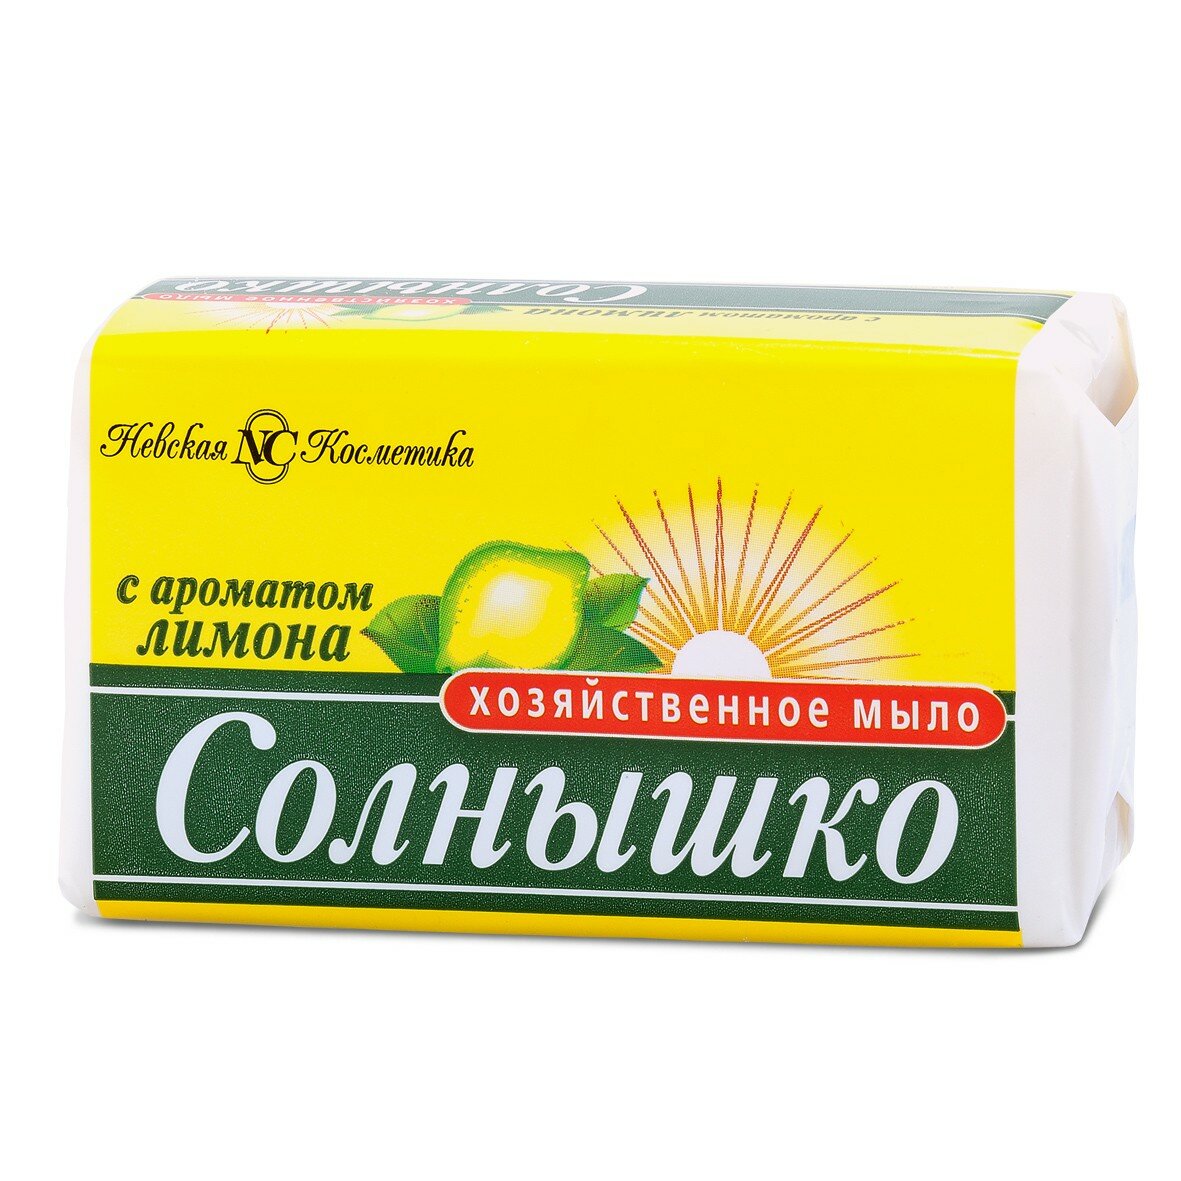 Набор из 5 штук Хозяйственное мыло Невская Косметика Солнышко с ароматом лимона 140г